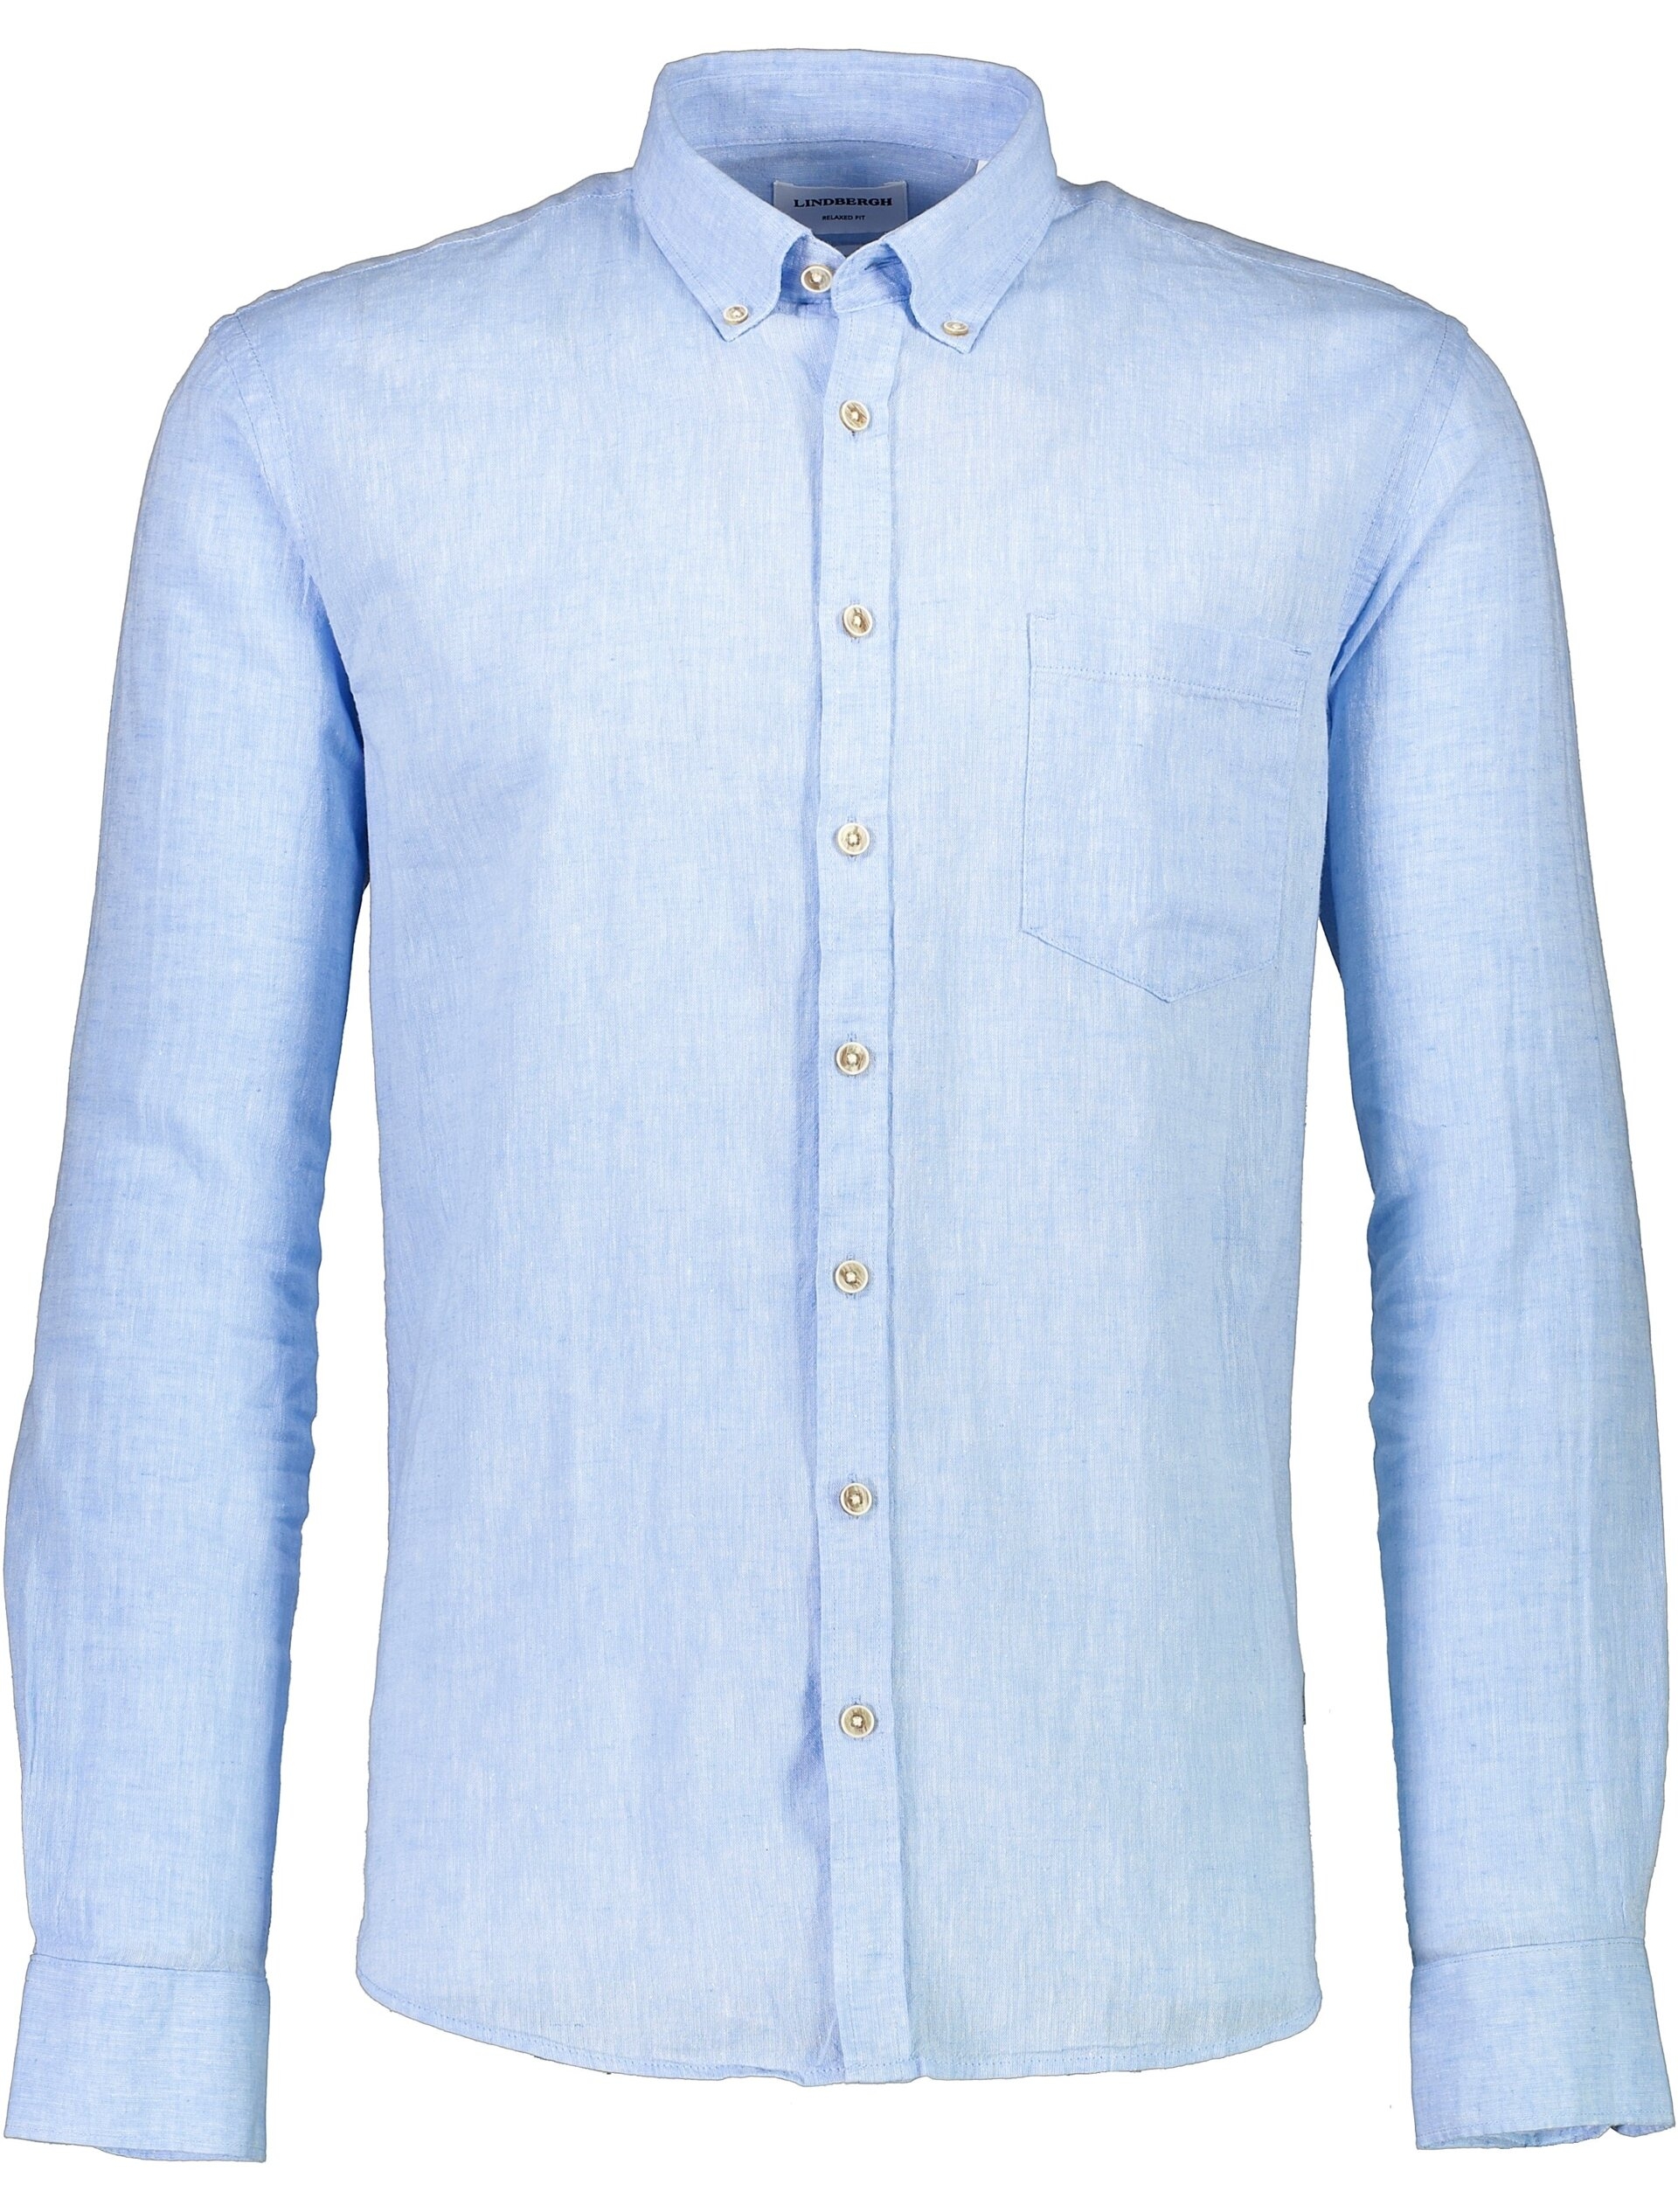 Lindbergh Linen shirt blue / sky blue